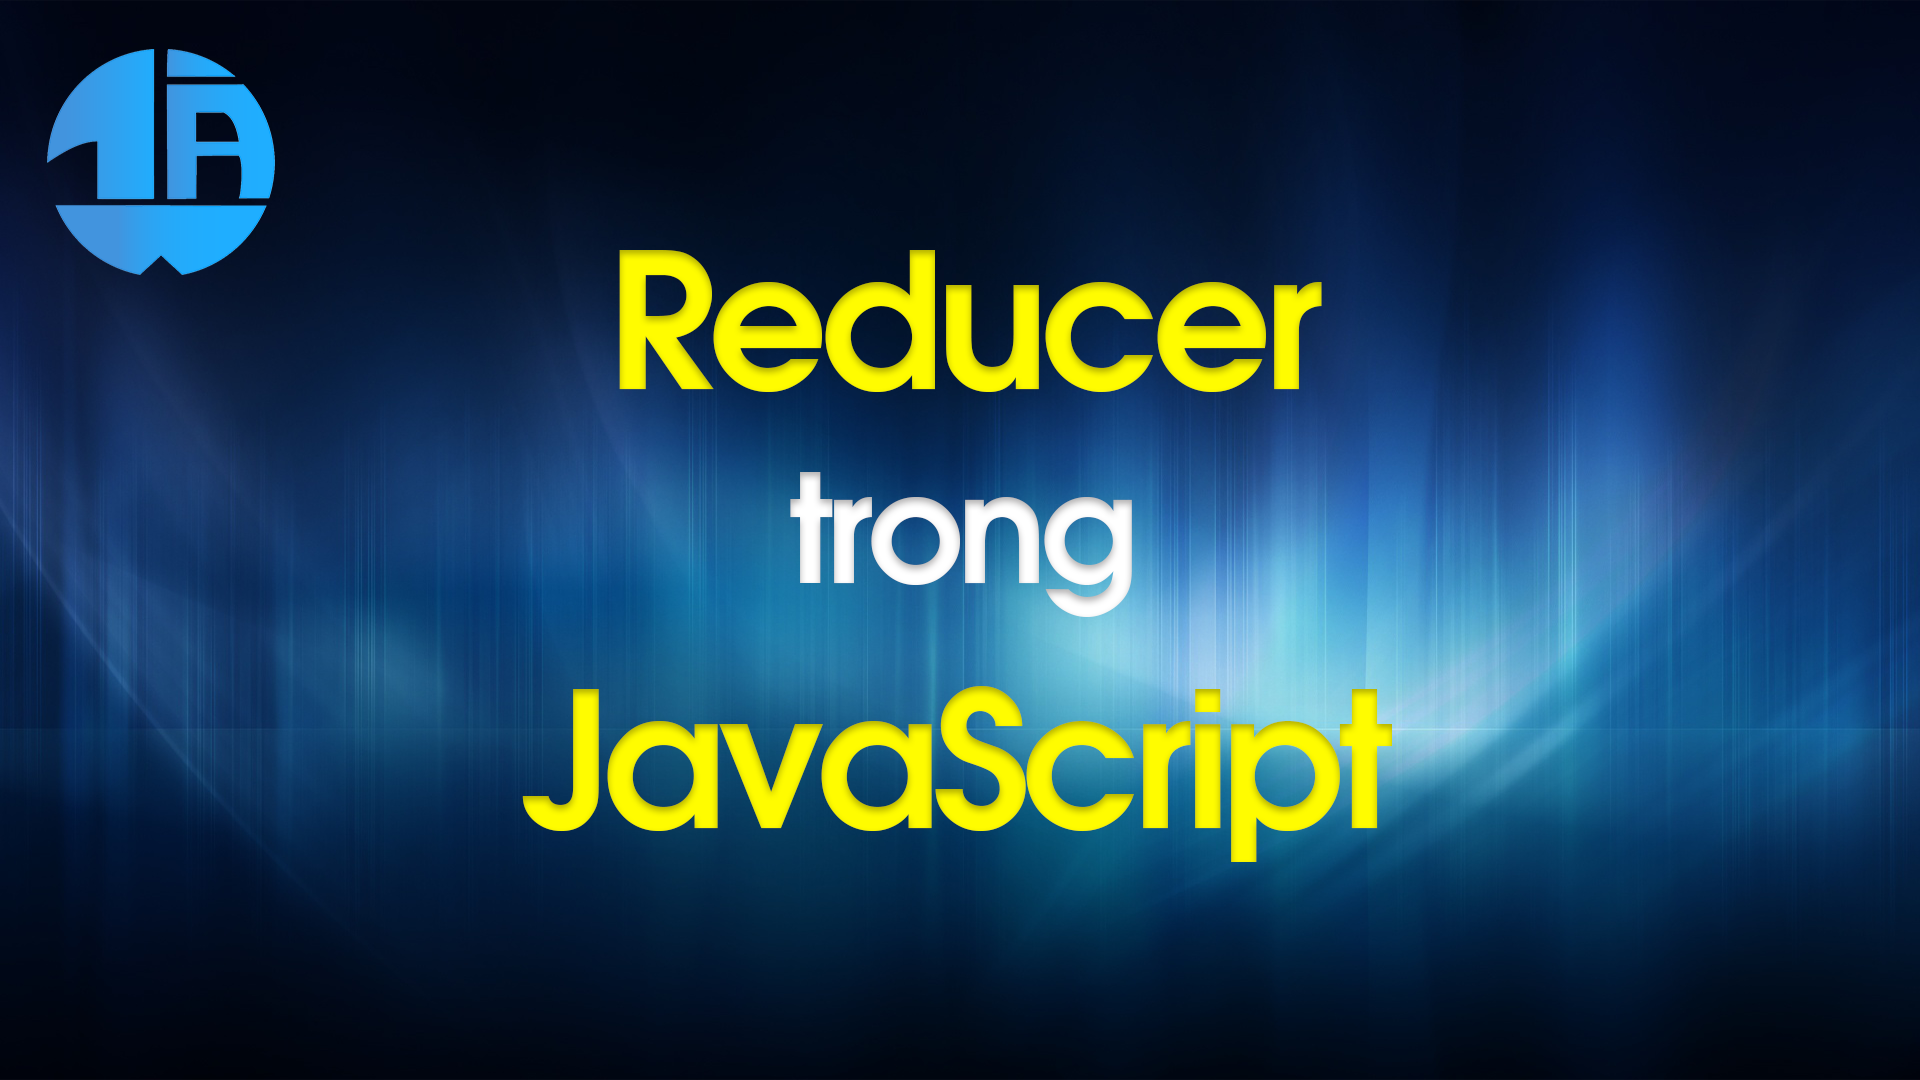 Tìm hiểu Reducer là gì trong Javascript